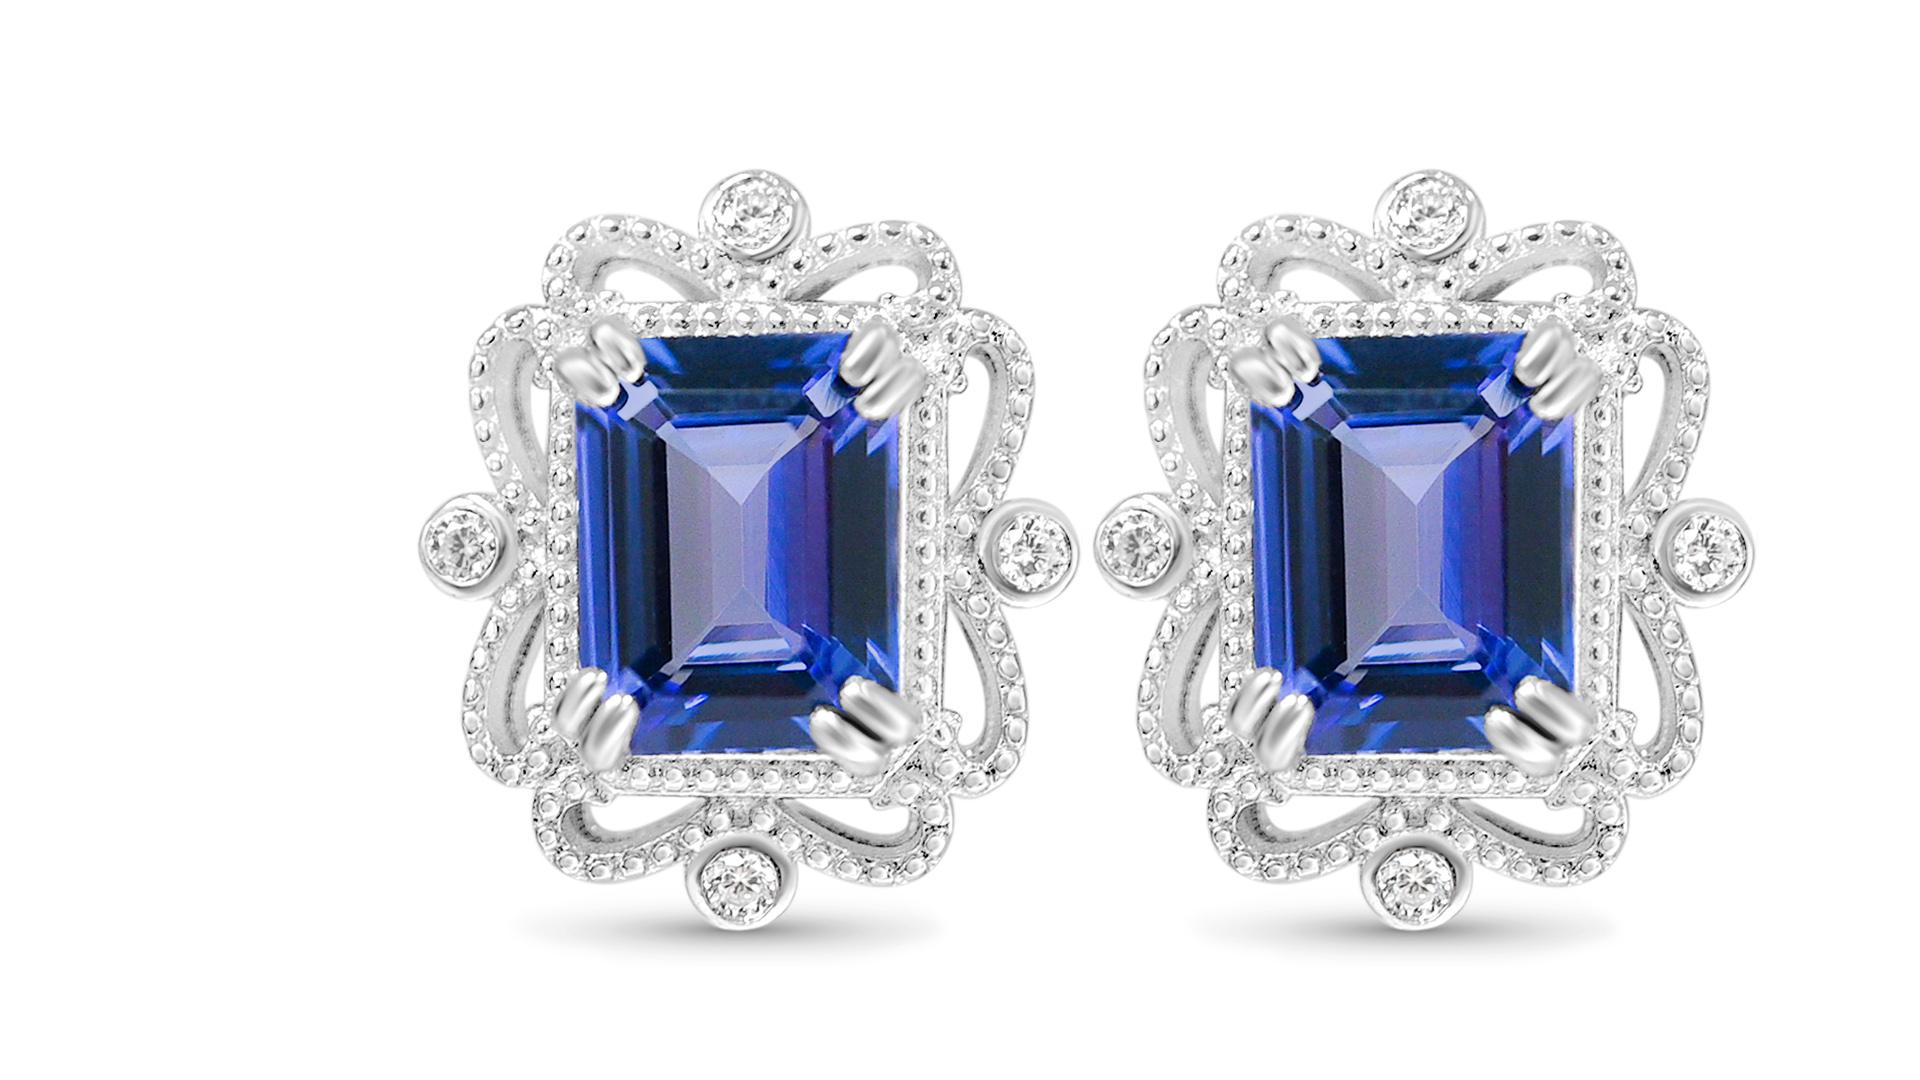 Willkommen bei Blue Star Gems NY LLC! Entdecken Sie beliebte Designs für Verlobungs-Ohrstecker und Hochzeits-Ohrringe, von klassisch bis vintage inspiriert. Wir bieten Joyful-Schmuck für den Alltag. Nur für Sie. Wir gehen über die aktuellen